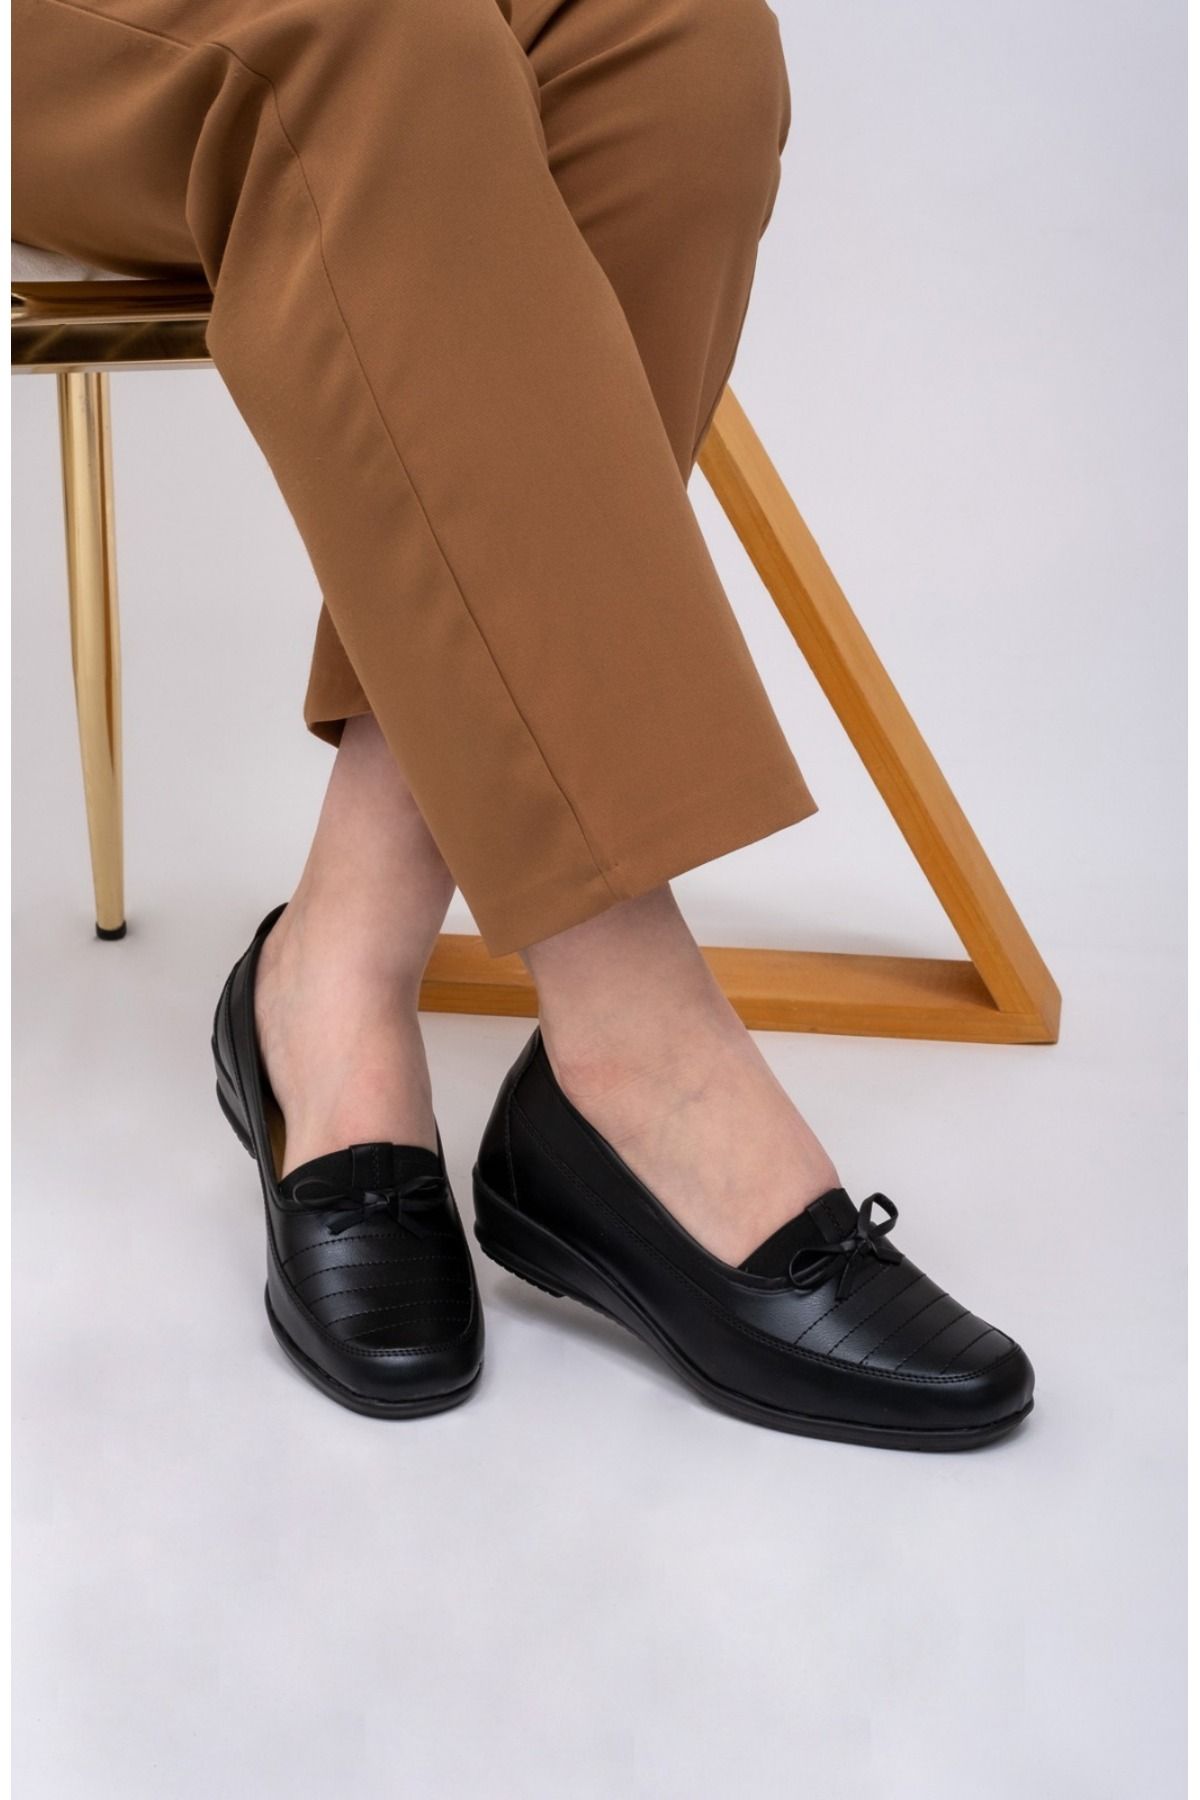 The Dilmach Anne Ayakkabısı Siyah Tam Ortopedik Deri Taban Topuk Dikenine Kadın Ayakkabı